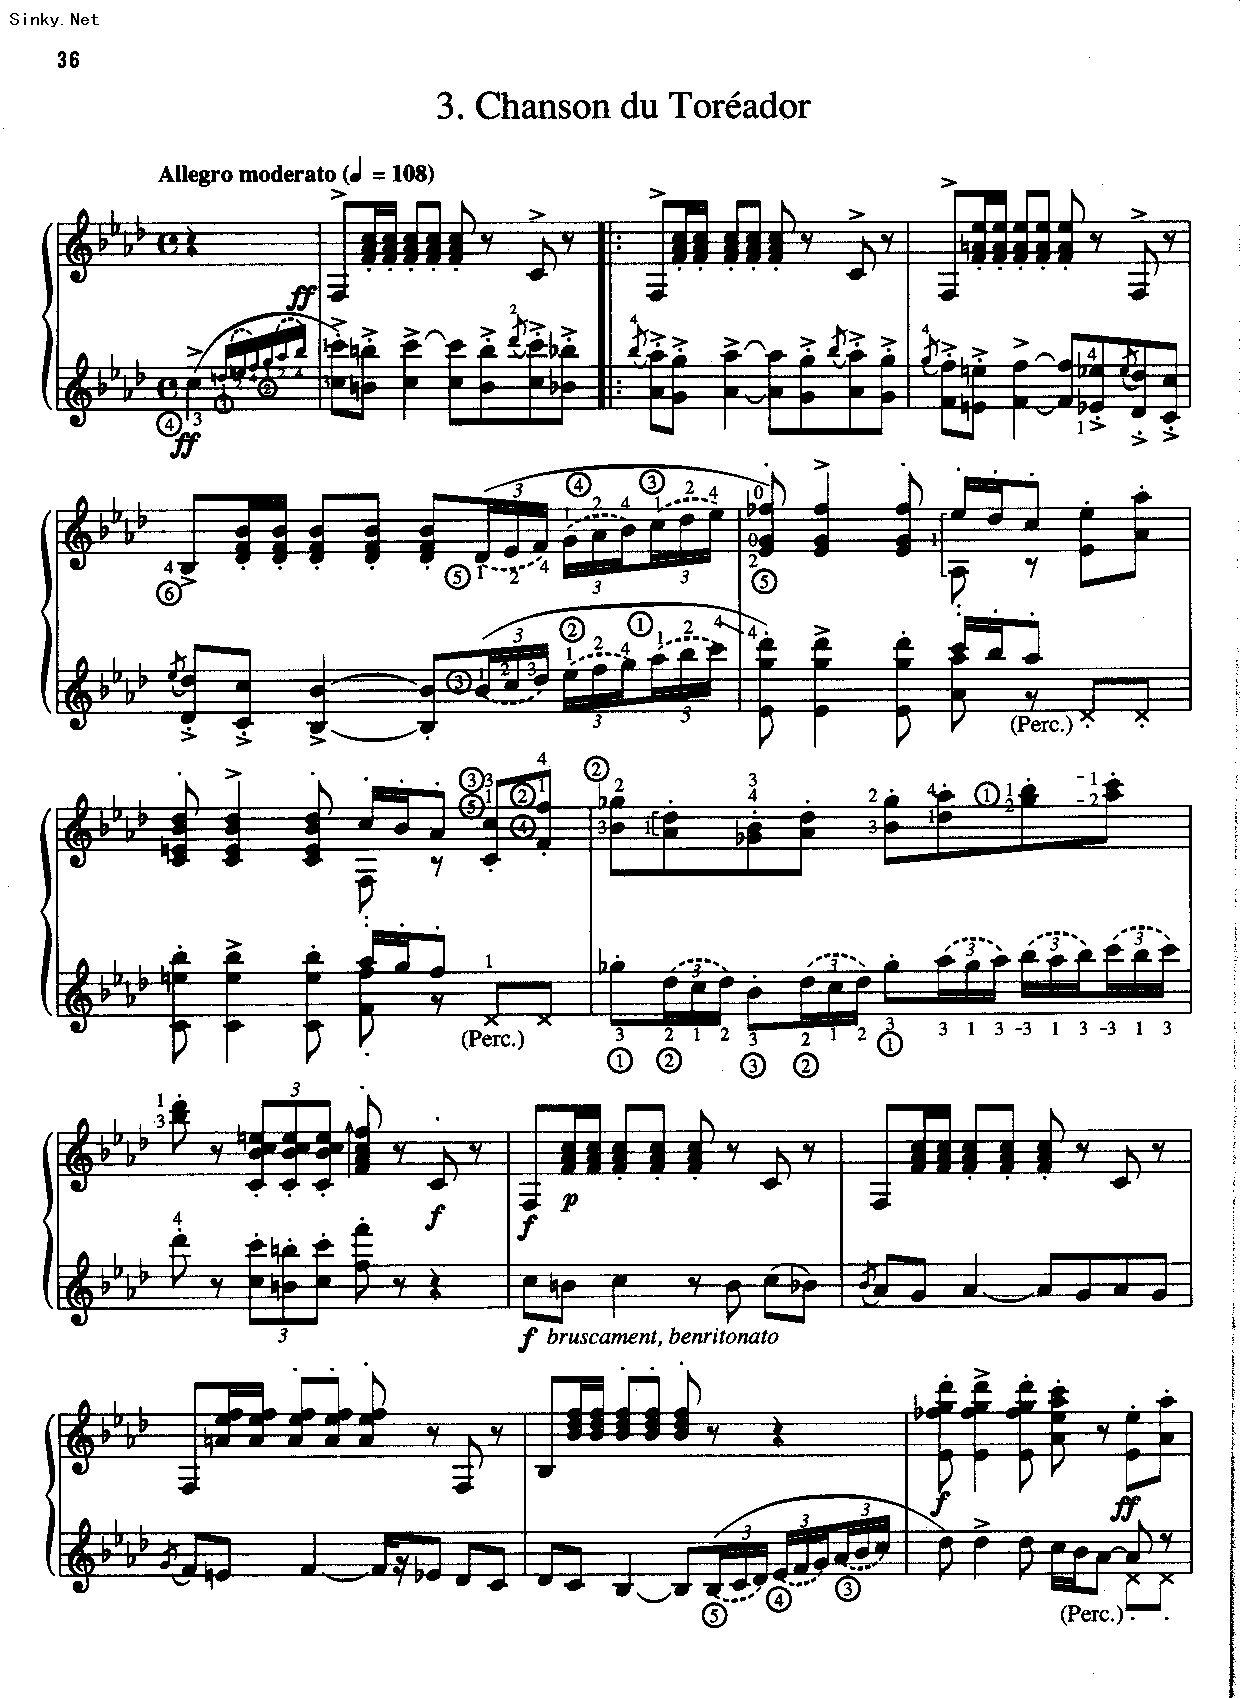 《卡门序曲 完整版,钢琴谱》比才-Bizet|弹琴吧|钢琴谱|吉他谱|钢琴曲|乐谱|五线谱|高清免费下载|蛐蛐钢琴网